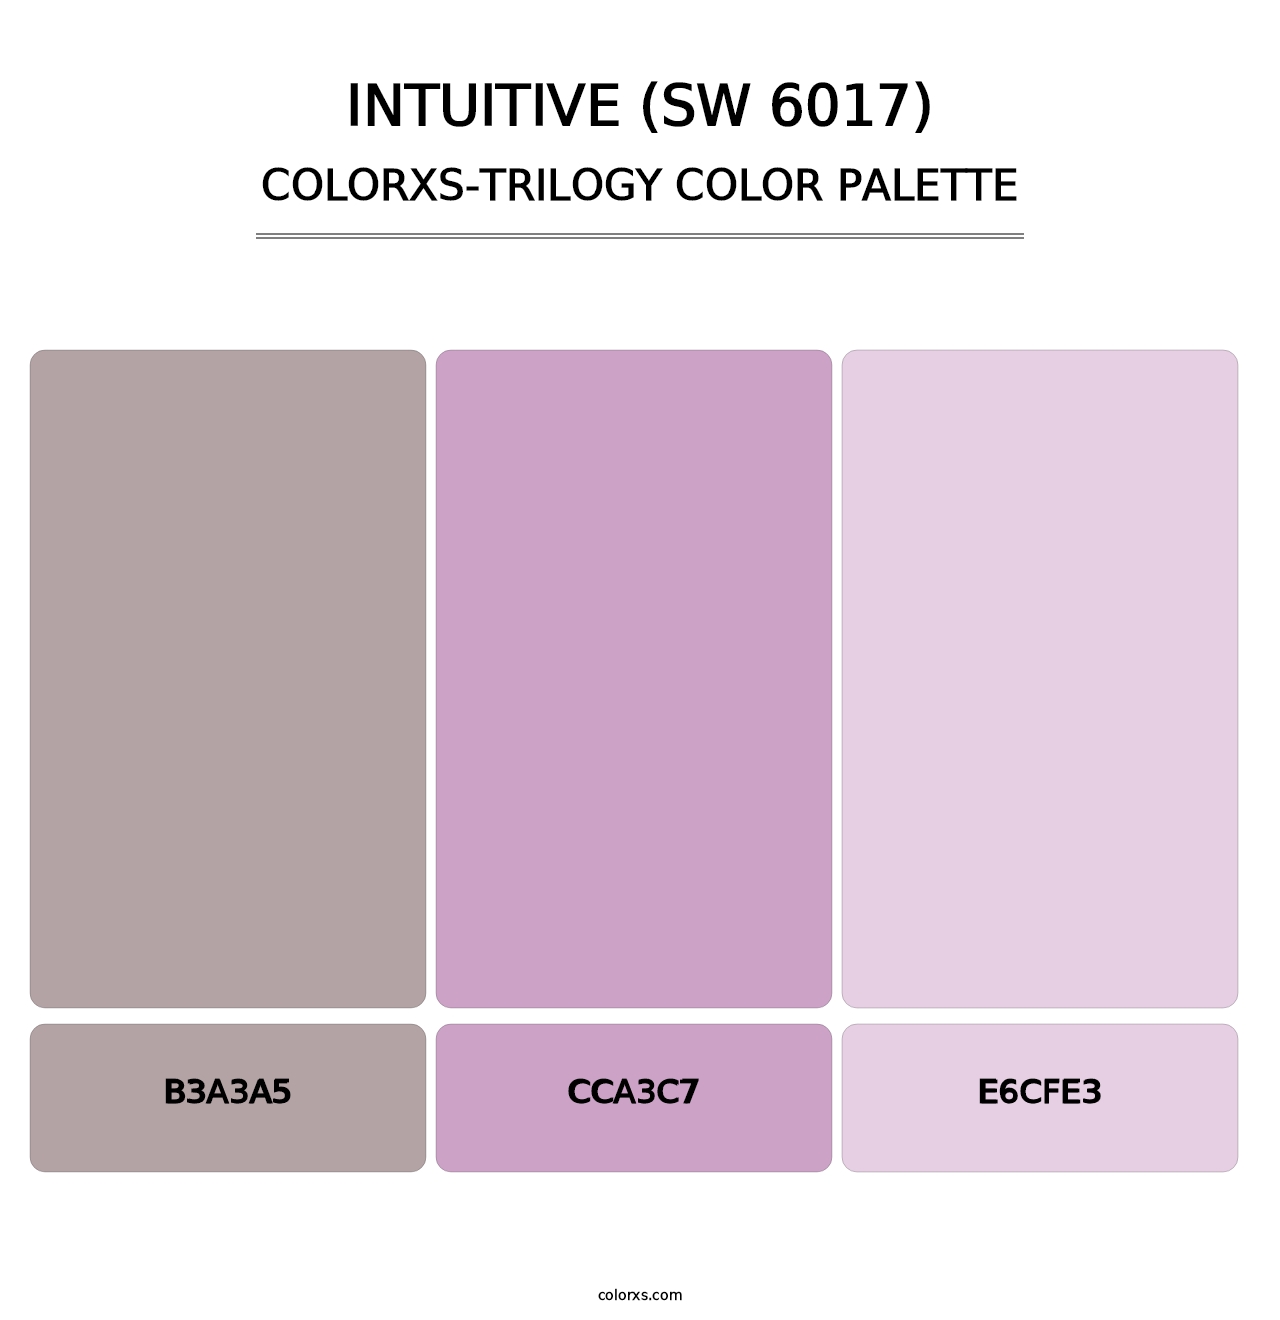 Intuitive (SW 6017) - Colorxs Trilogy Palette